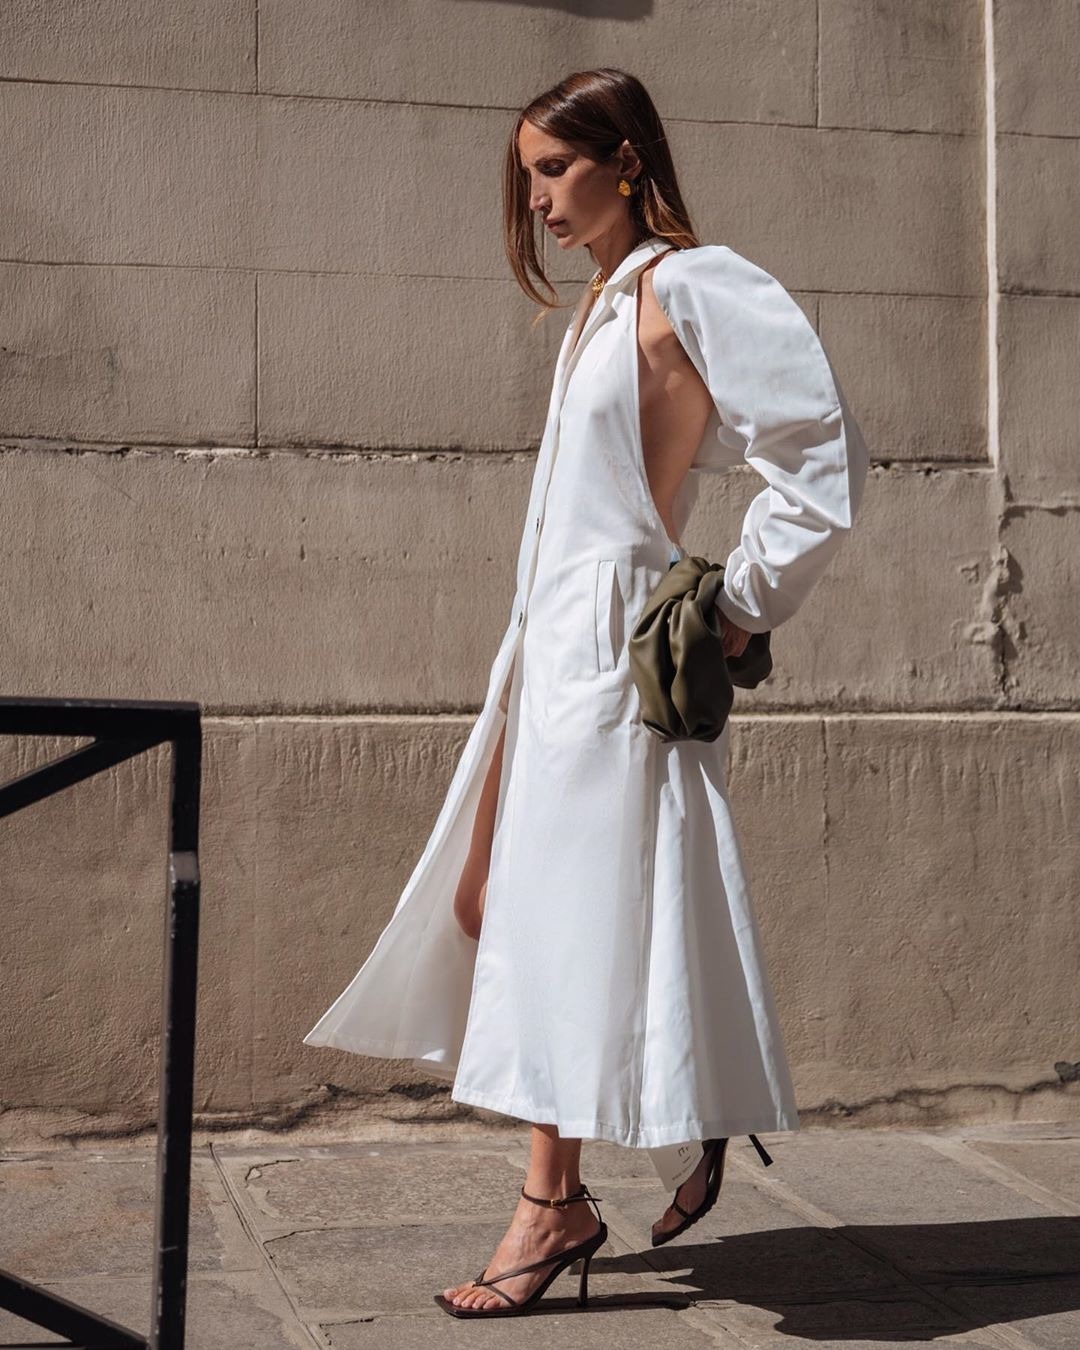 Tine Andrea'dan Elsa Hosk'a Haftanın En İyi Moda Instagramları